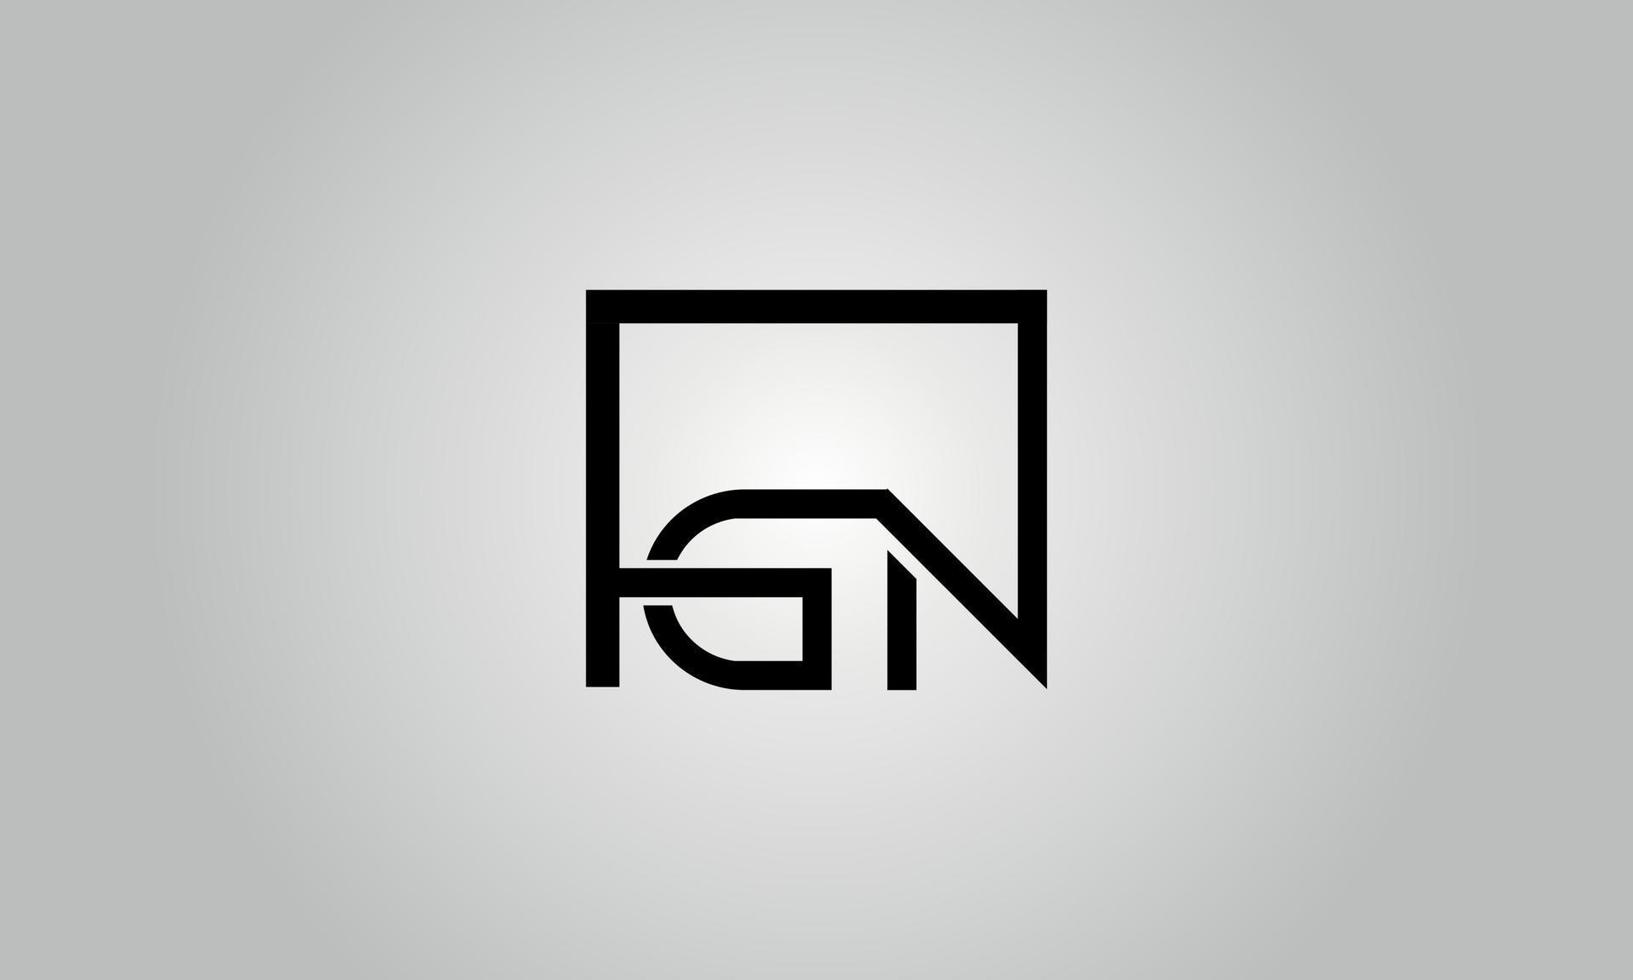 création de logo lettre gn. logo gn avec forme carrée dans le modèle de vecteur gratuit de vecteur de couleurs noires.